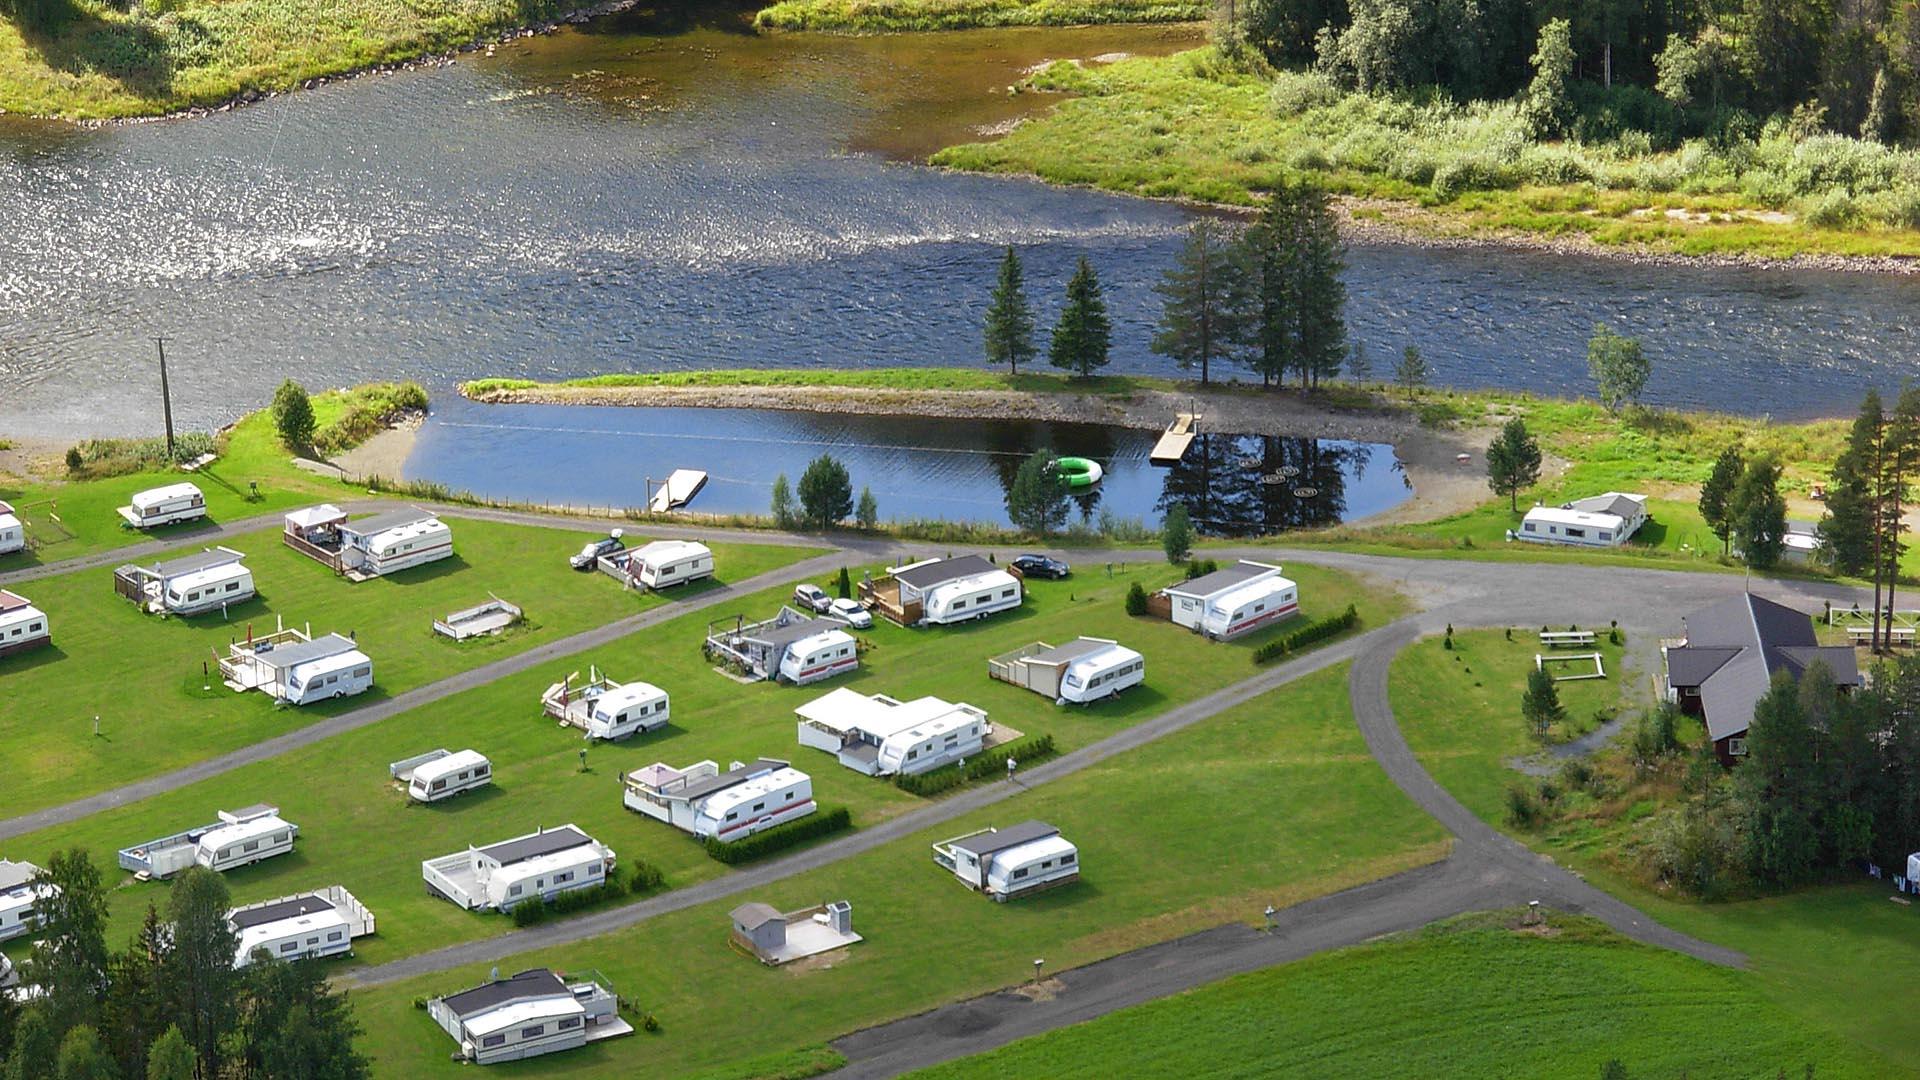 Luftfoto von einem Campingplatz mit Wognmobilen auf grünem rasen an einem Flussufer